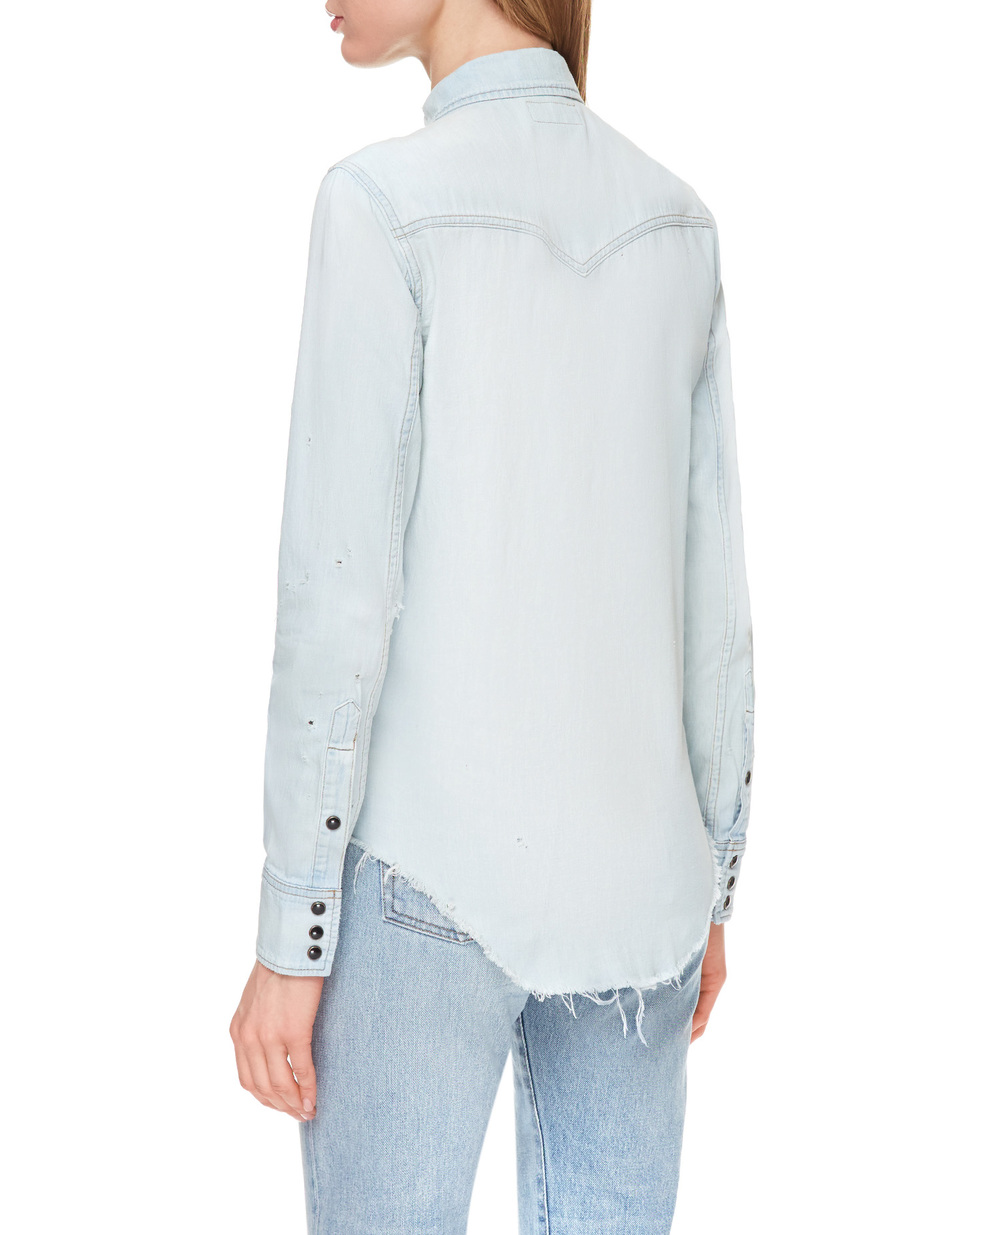 Джинсовая рубашка Saint Laurent 651160-Y24AB, голубой цвет • Купить в интернет-магазине Kameron